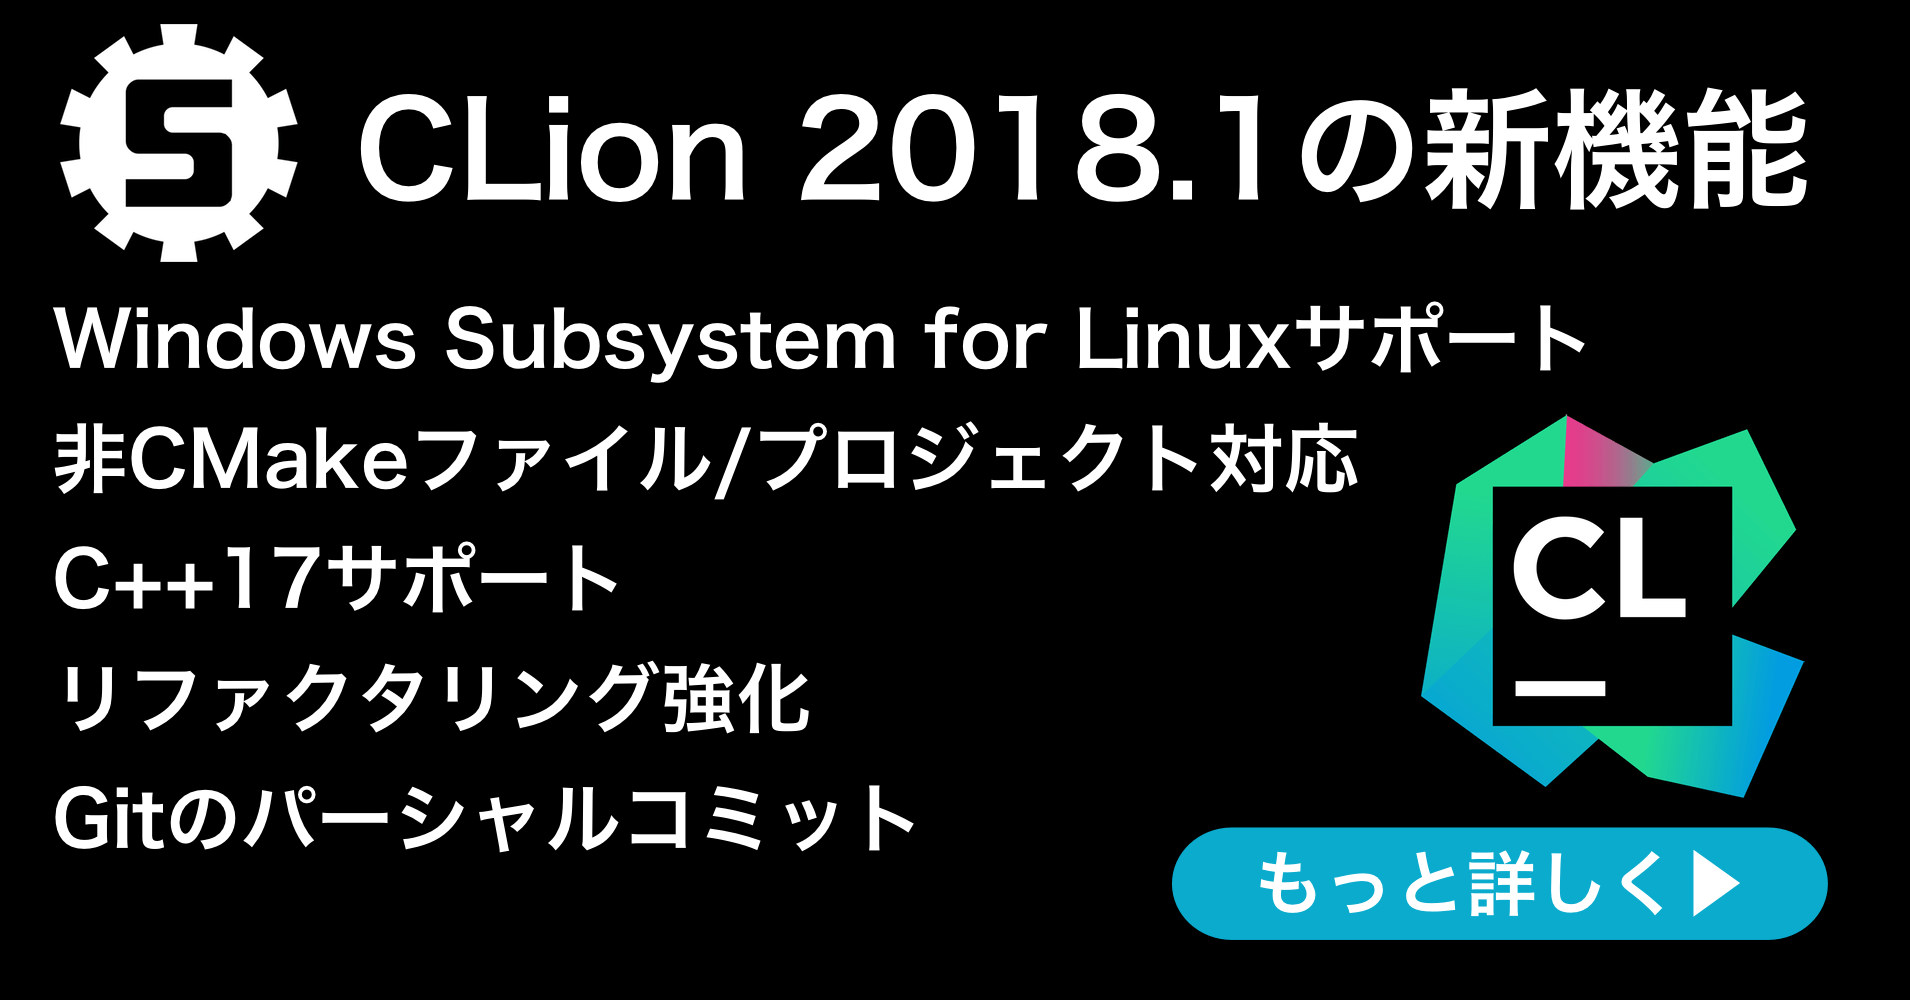 CLion 2018.1リリース